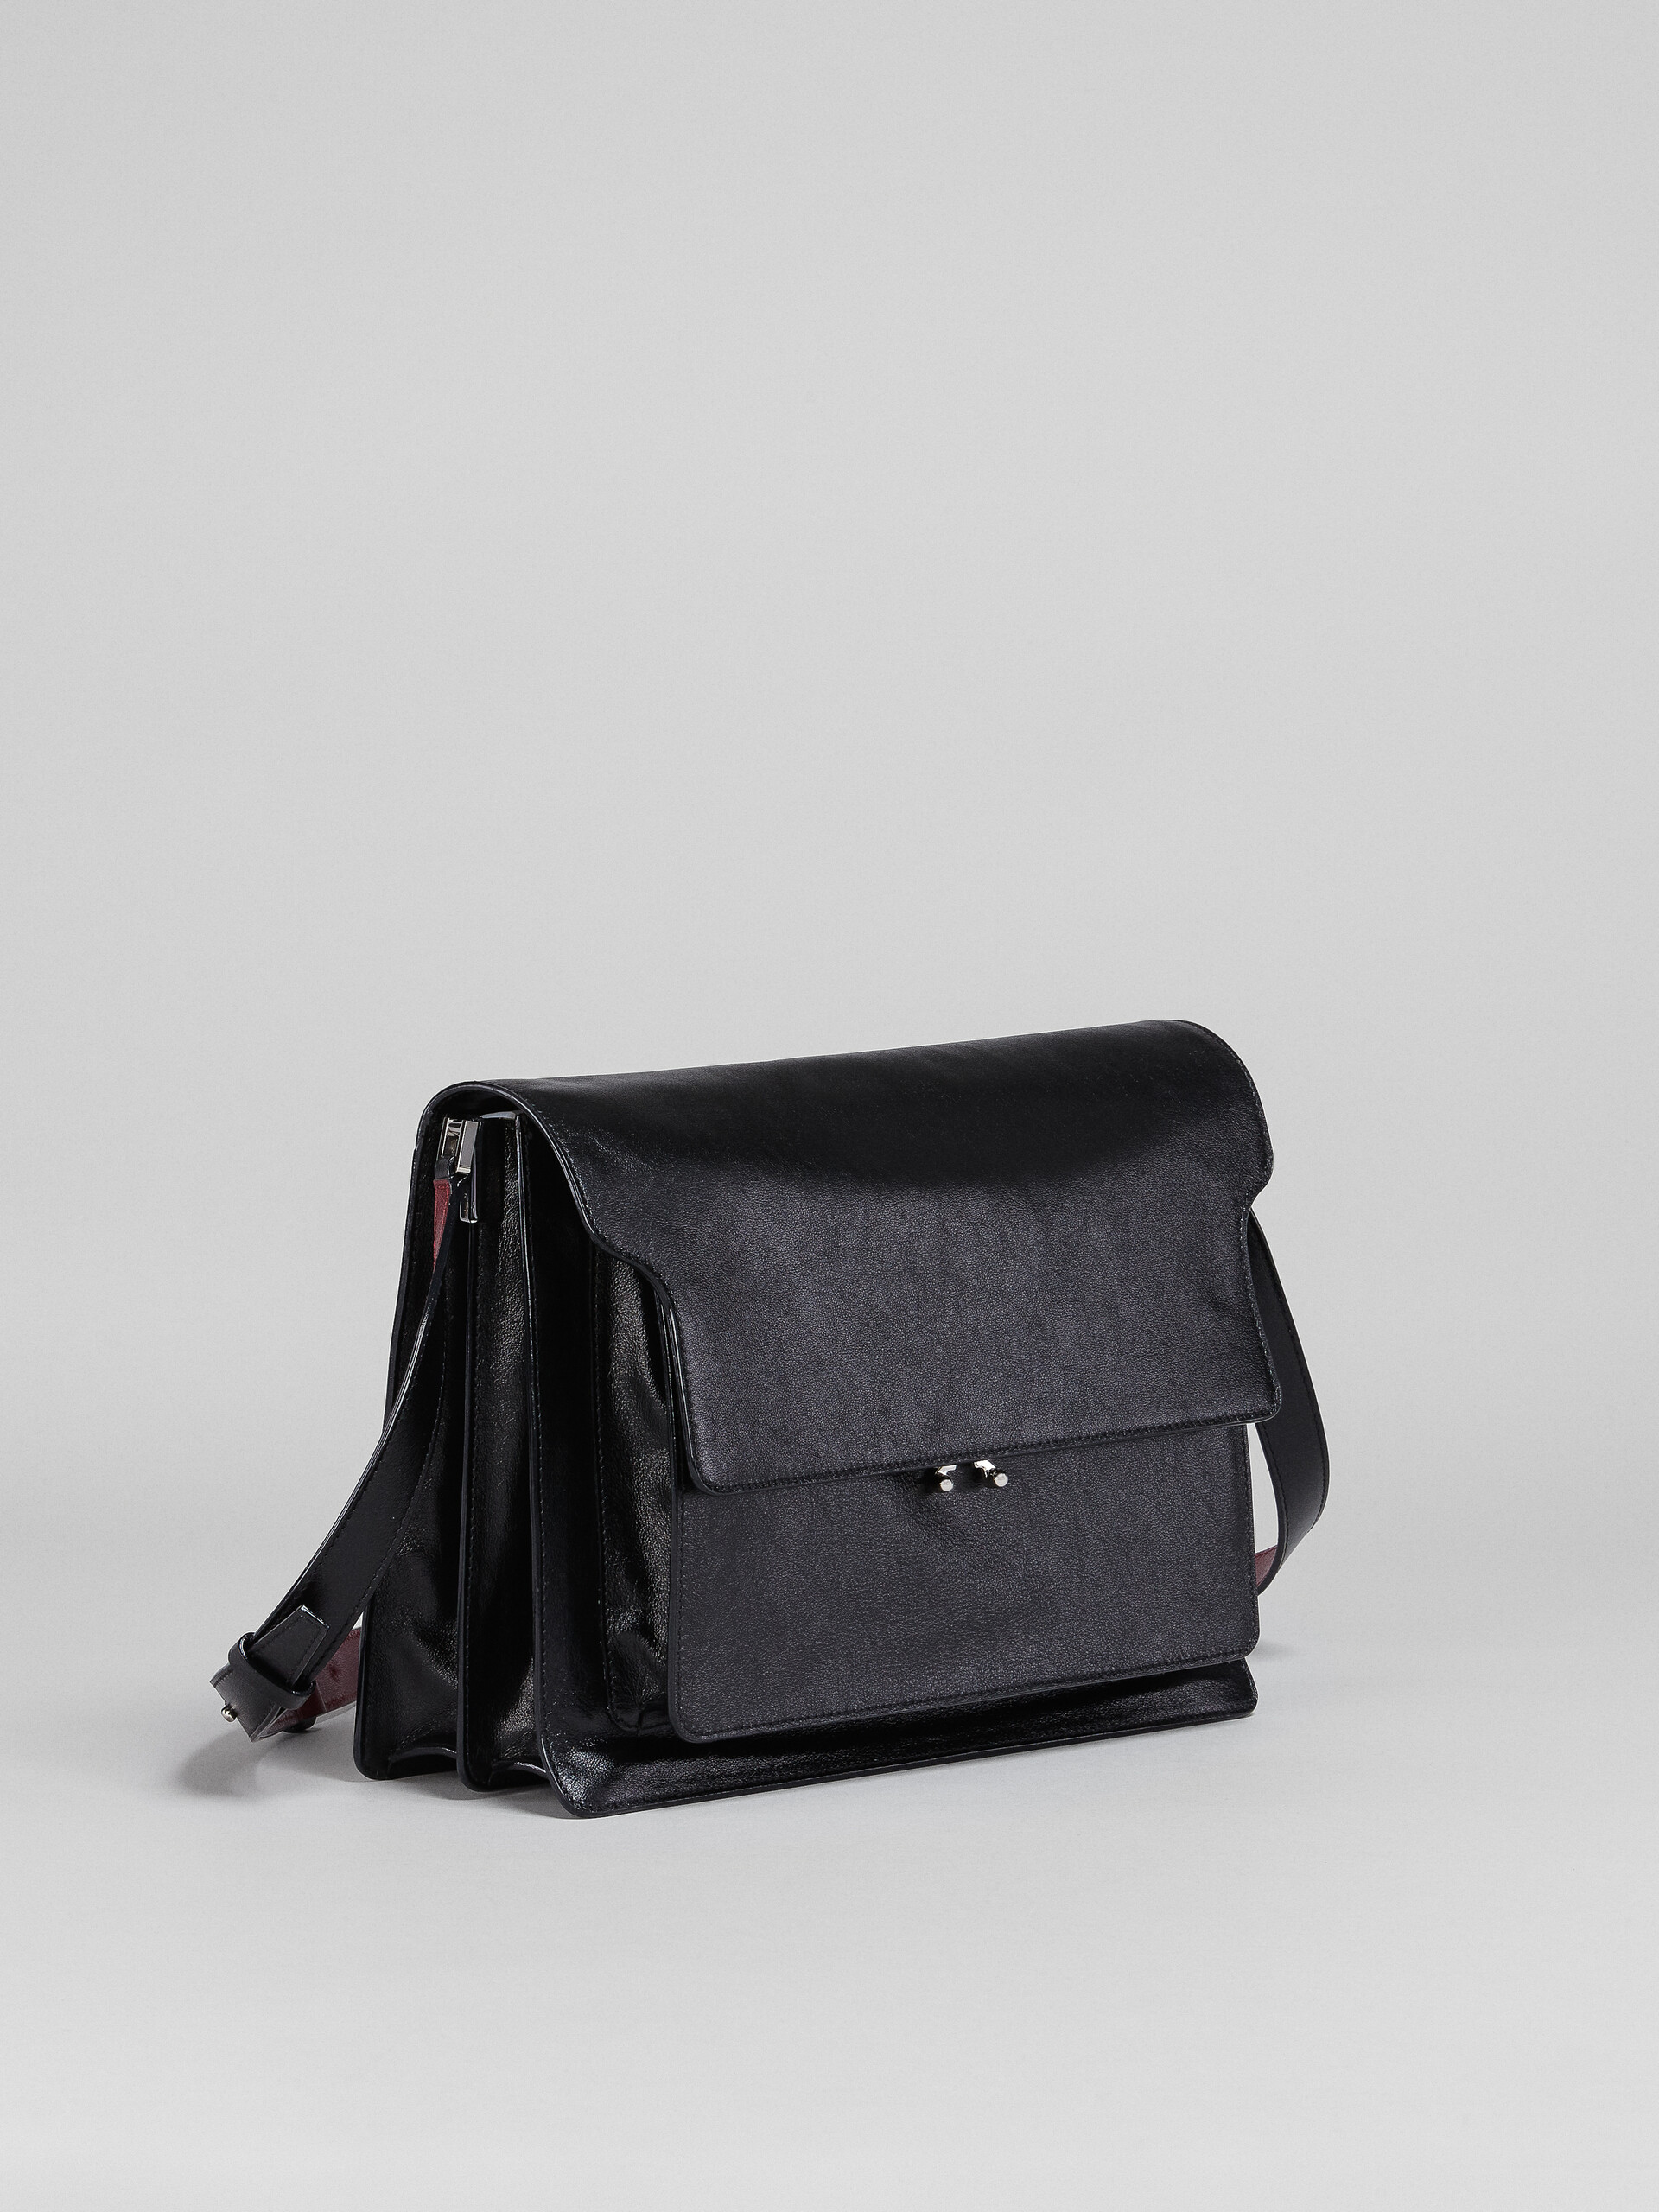 TRUNK SOFT bag in black leather and naif tiger print - Shoulder Bag - Image 6